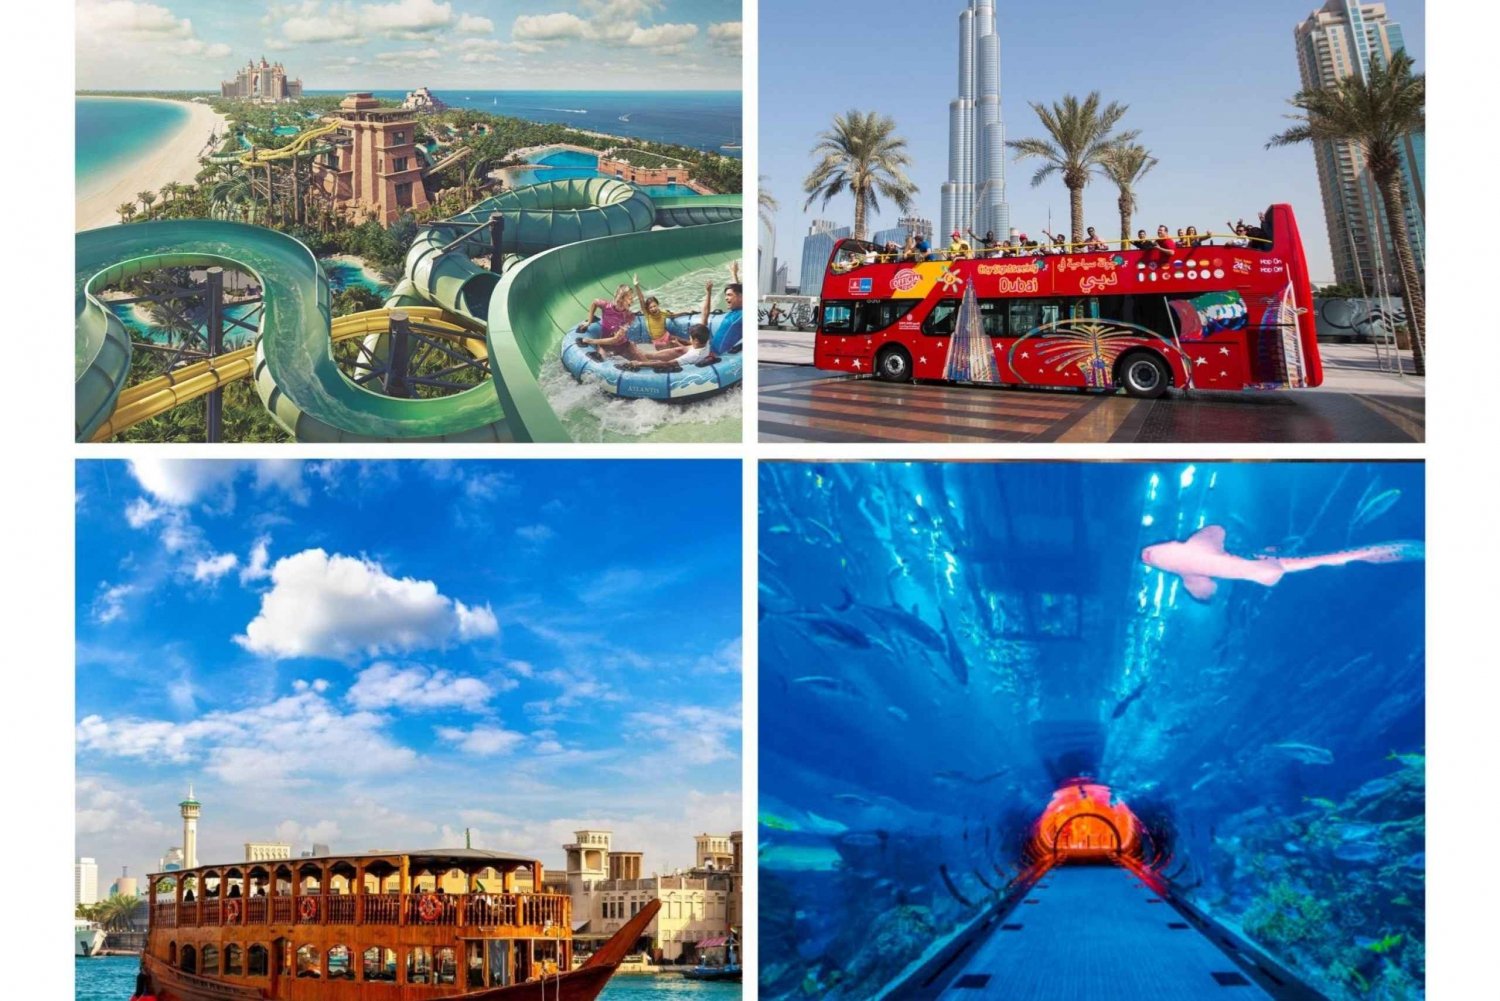 Dubai: Tour in autobus Hop-on Hop-off, Aquaventure e Tour in battello Dhow